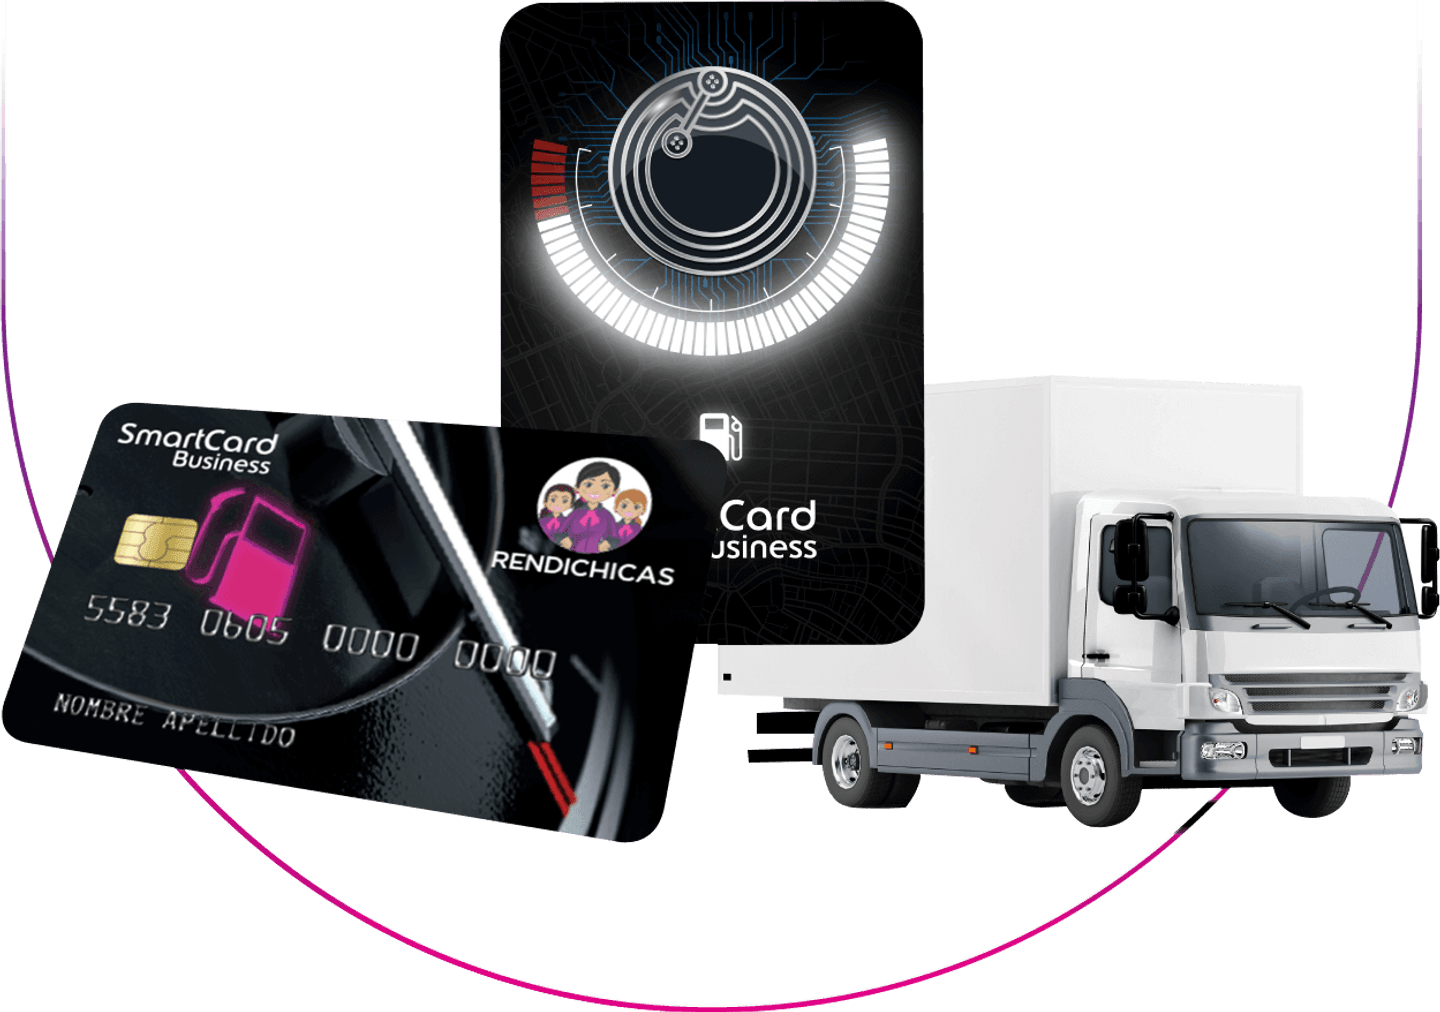 camión con tarjeta y tag SmartCard Bussiness Rendichicas